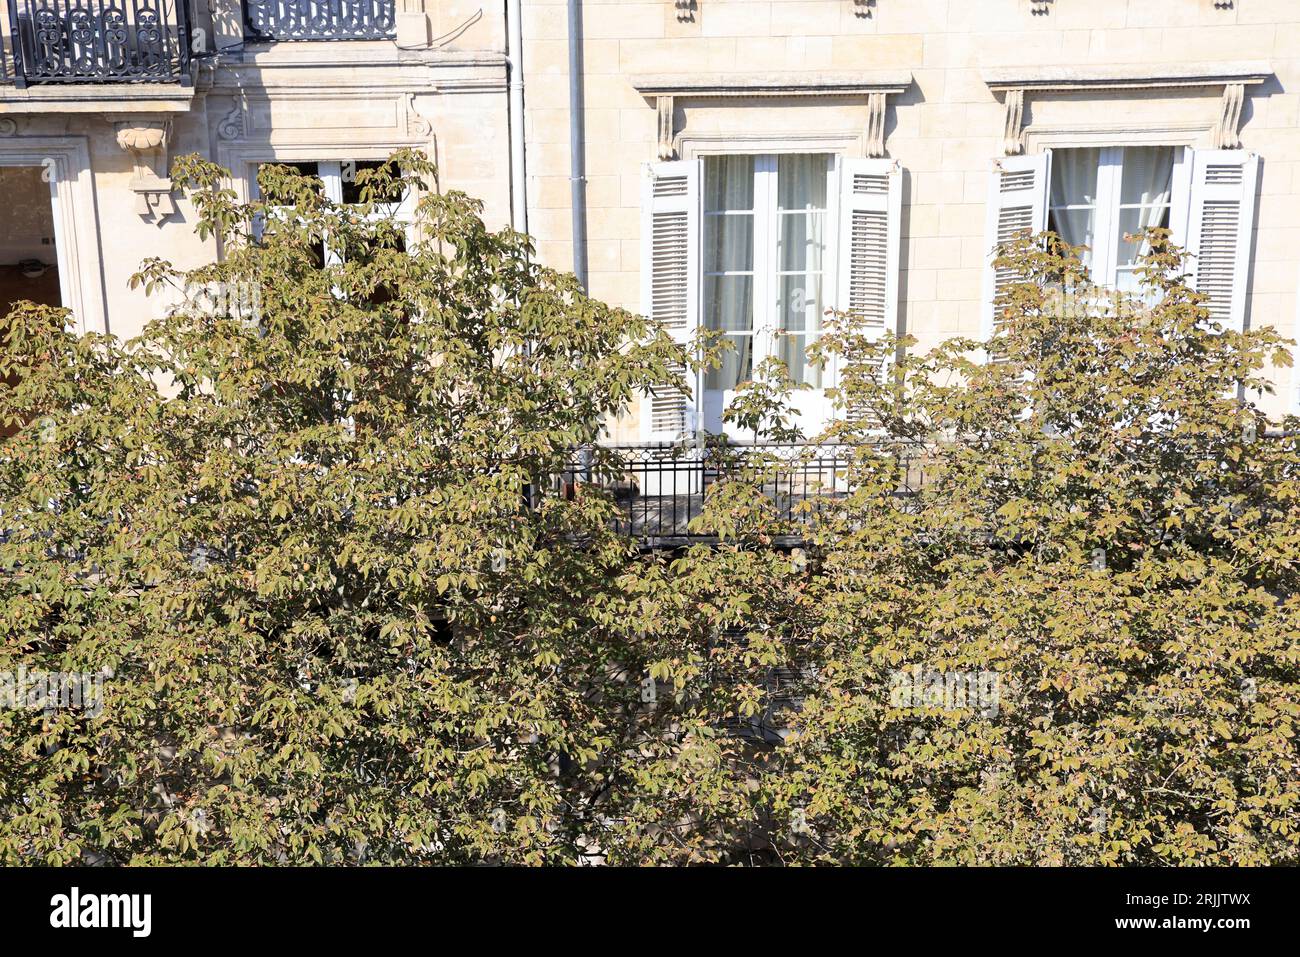 Réchauffement climatique, canicule, chaleur, arbres et végétalisation des villes. Pendant la canicule l'après-Midi dans le centre ville de Bordeaux le Foto Stock